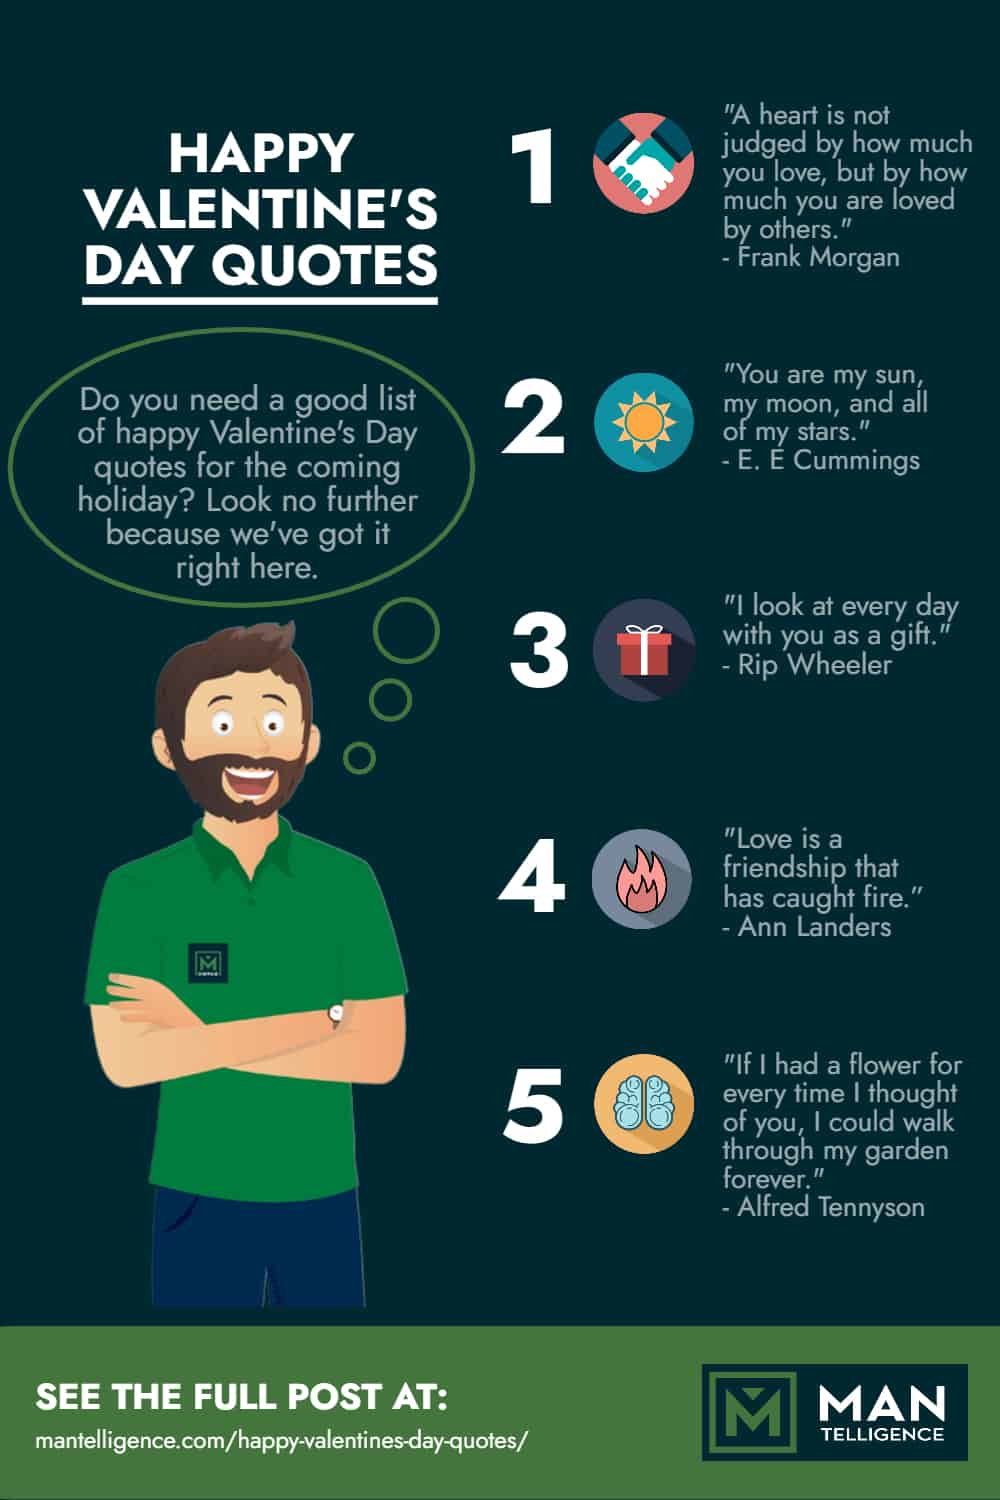 Happy Valentine's Day Quotes - infographic